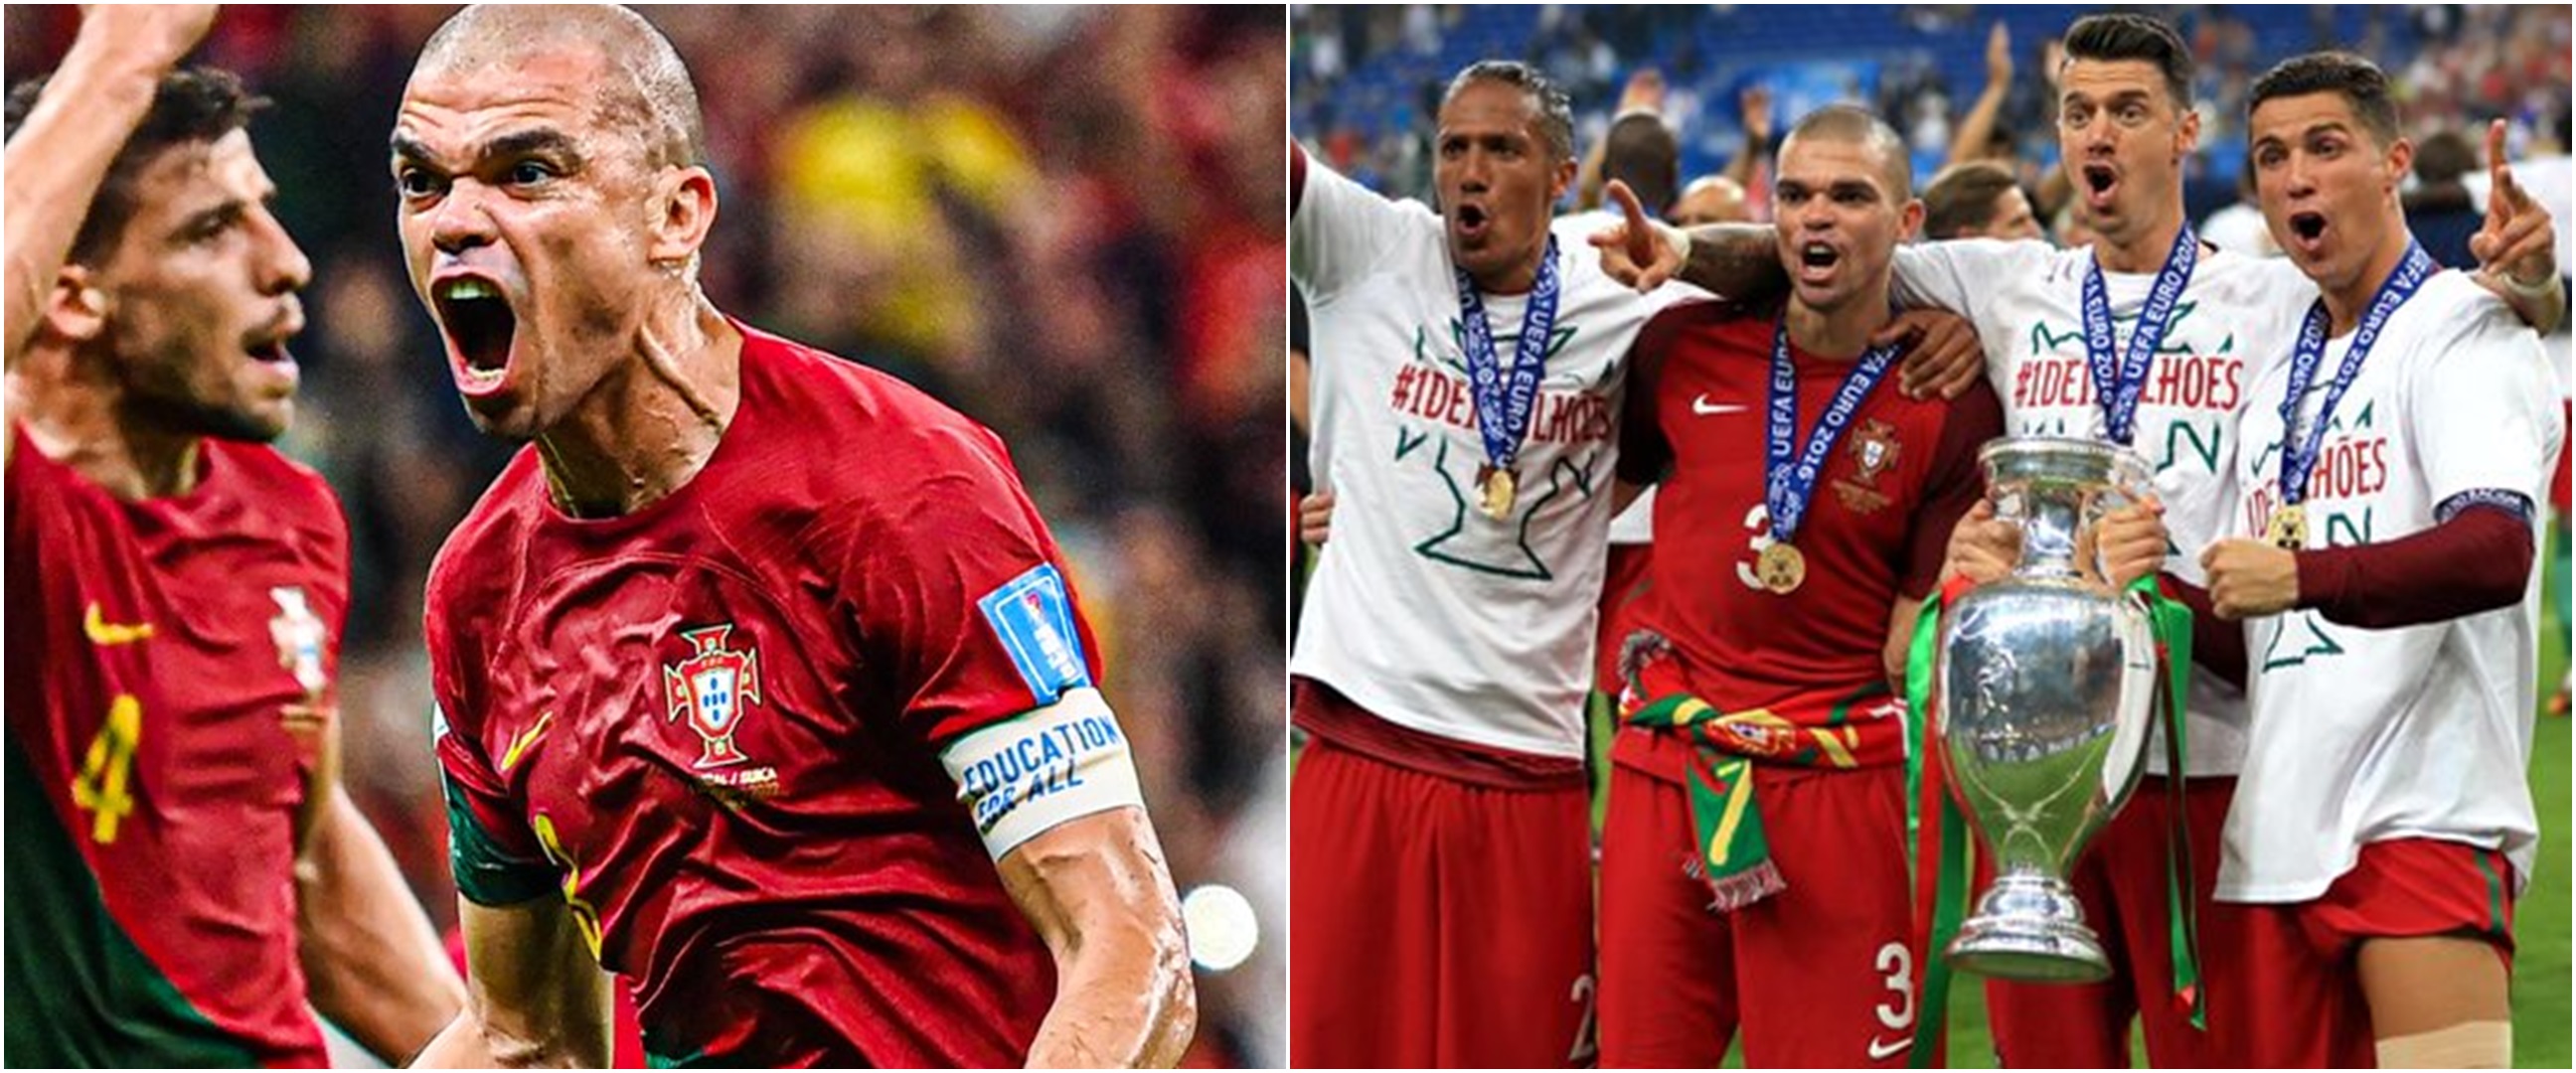 Kisah Pepe, pemain bengal pencetak gol tertua kedua di Piala Dunia sepanjang sejarah